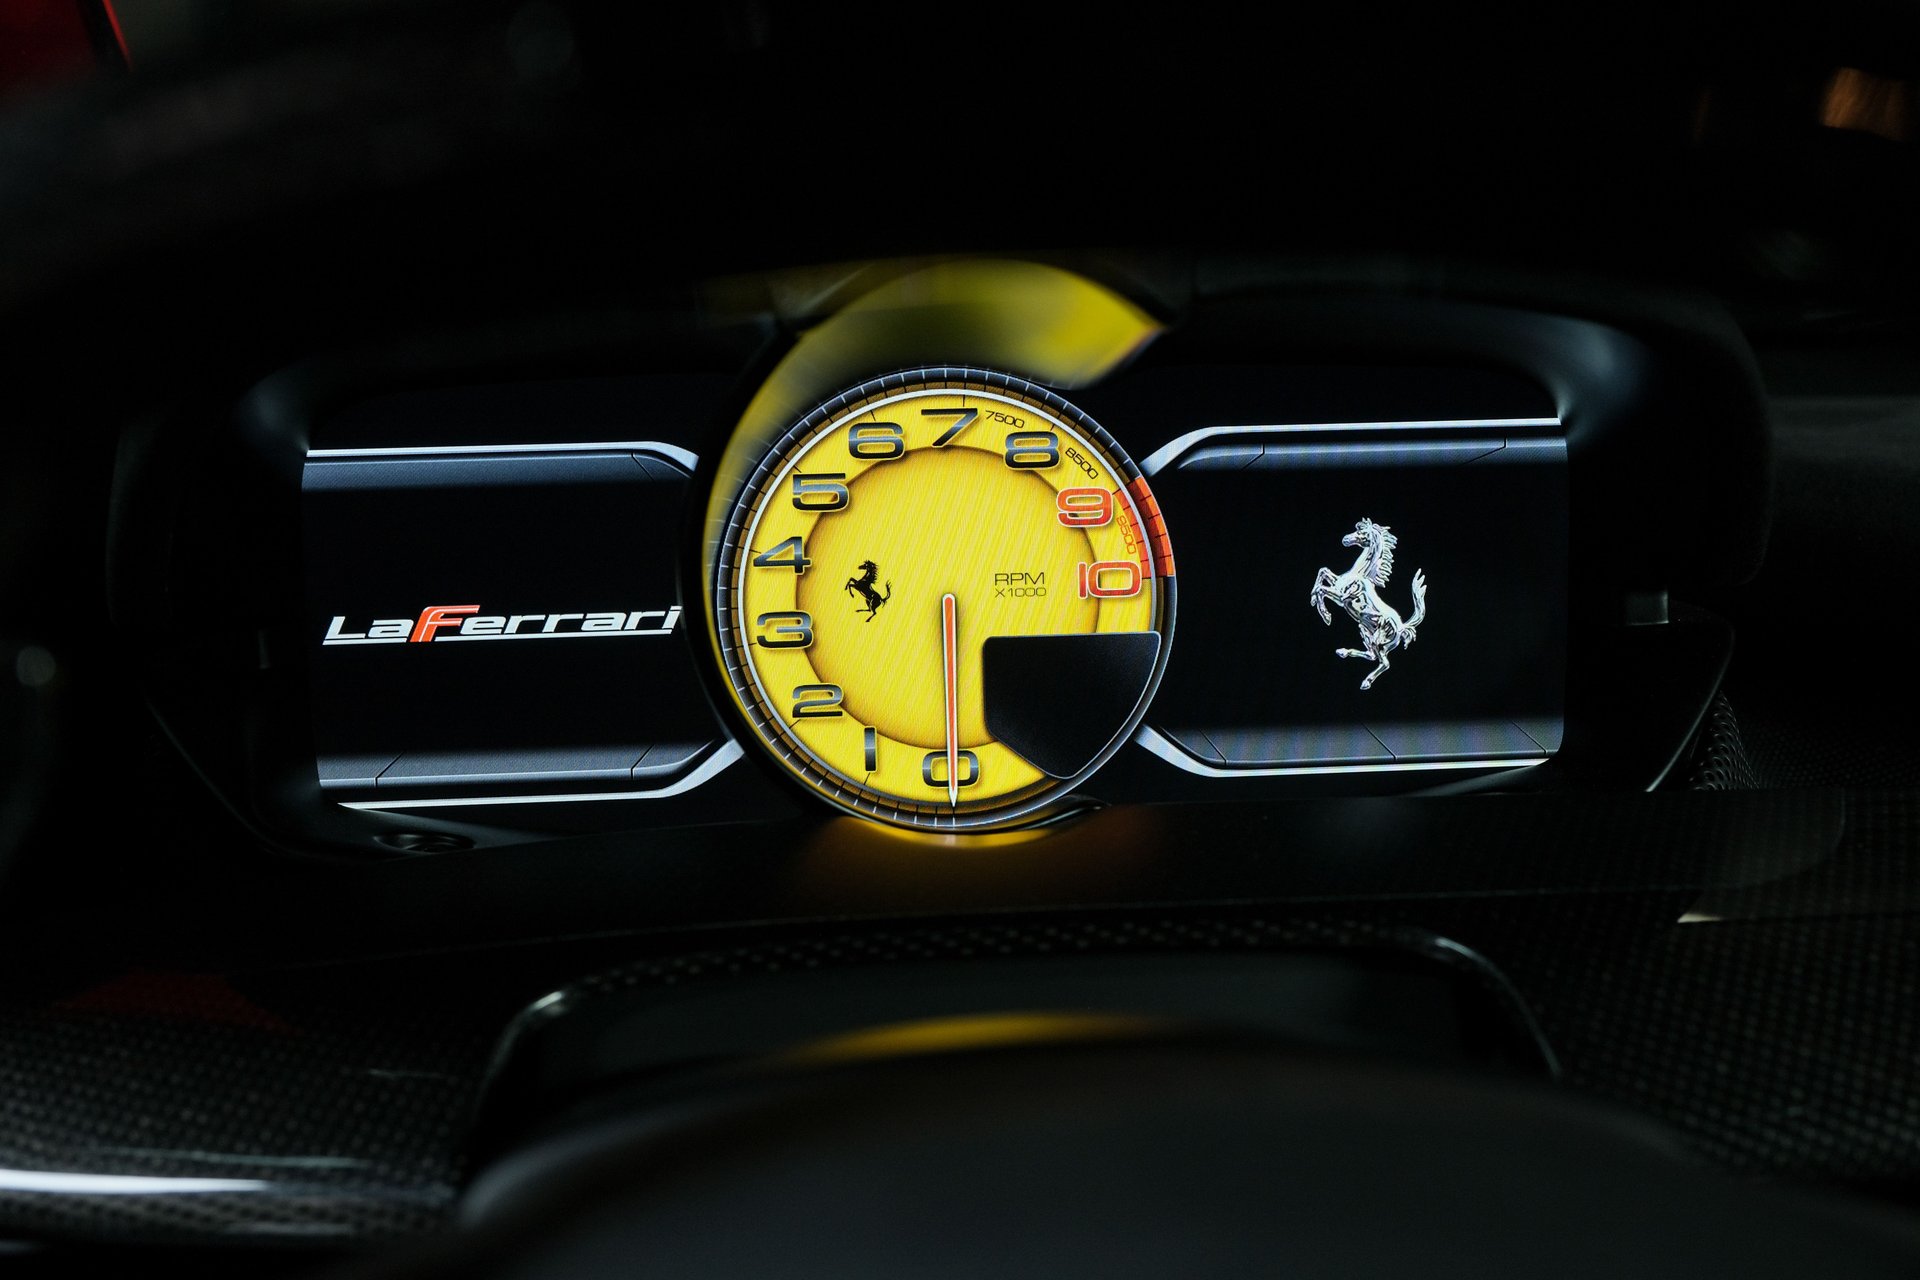 For Sale 2015 Ferrari LaFerrari